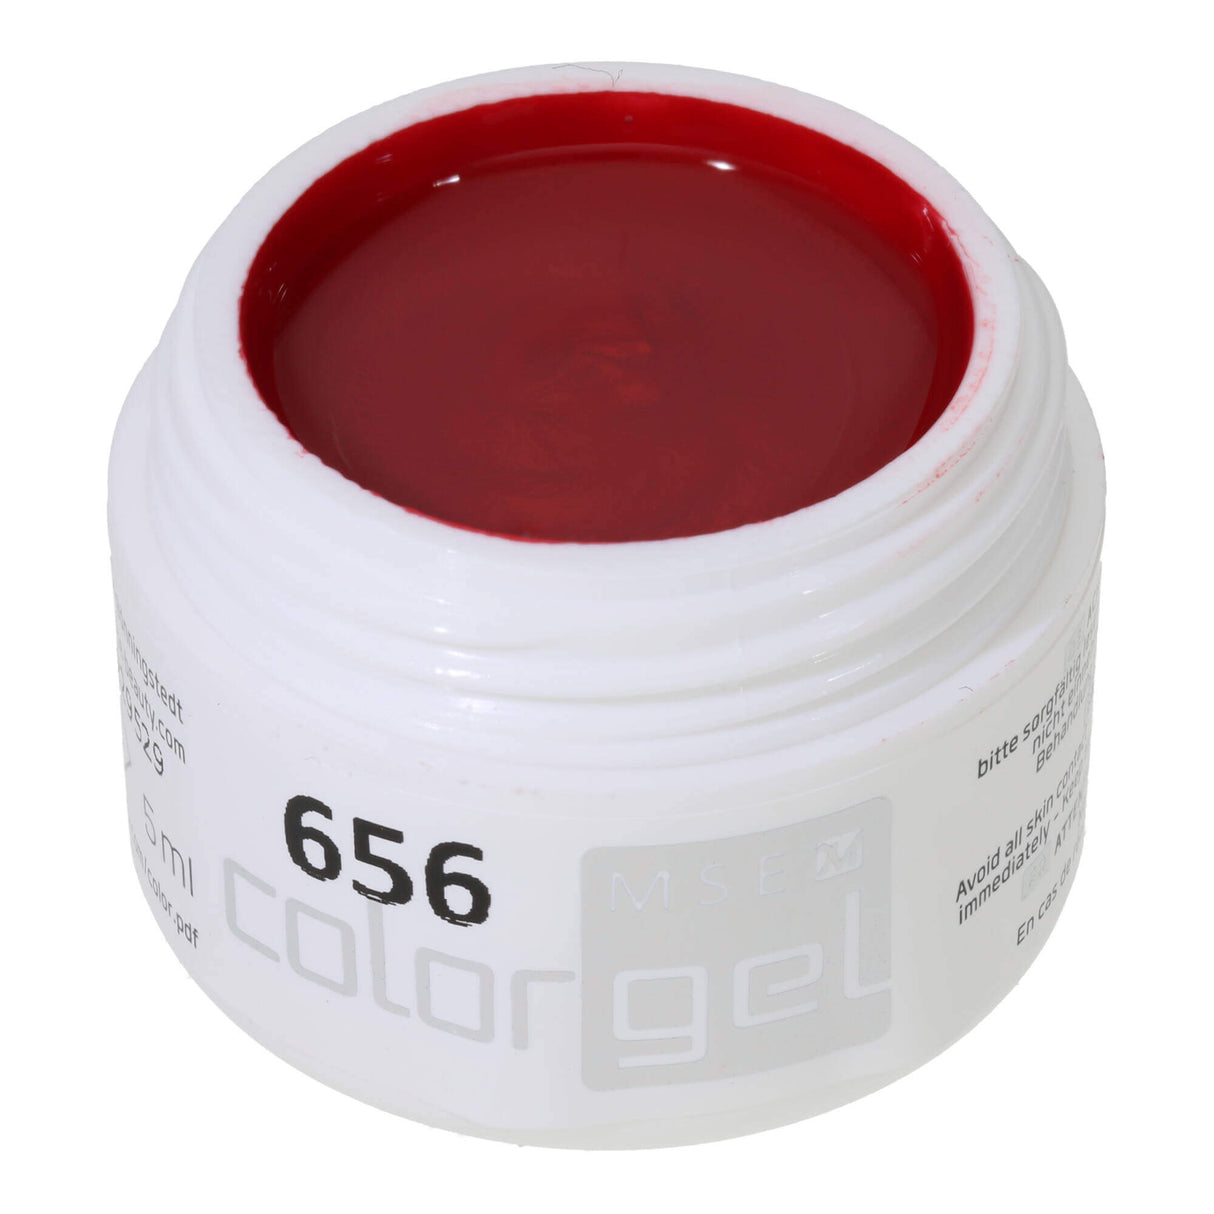 # 656 Premium-PURE Color Gel 5ml Red